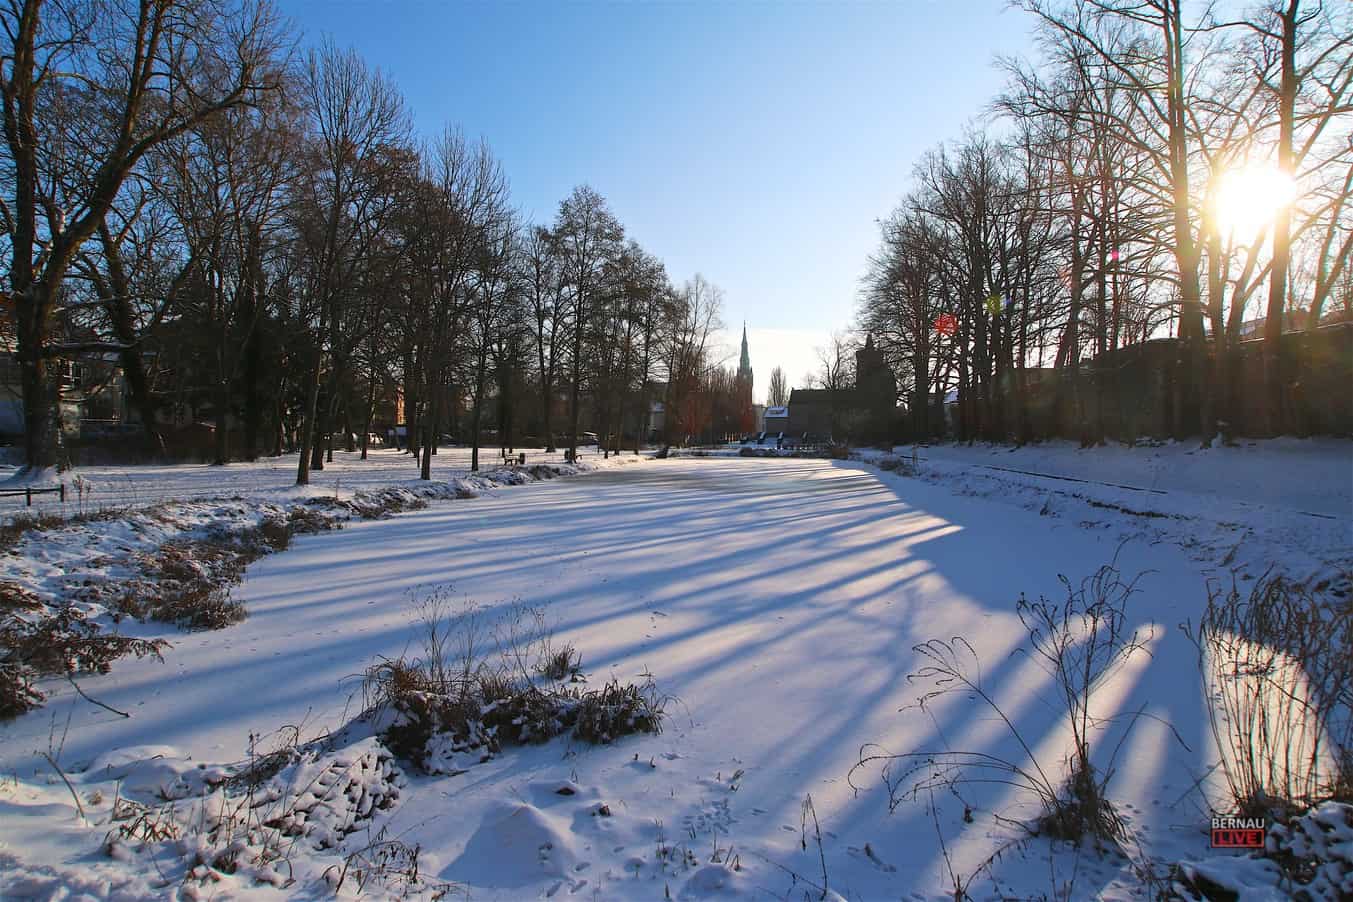 Bernau: So winterlich schön sah es genau vor einem Jahr bei uns aus